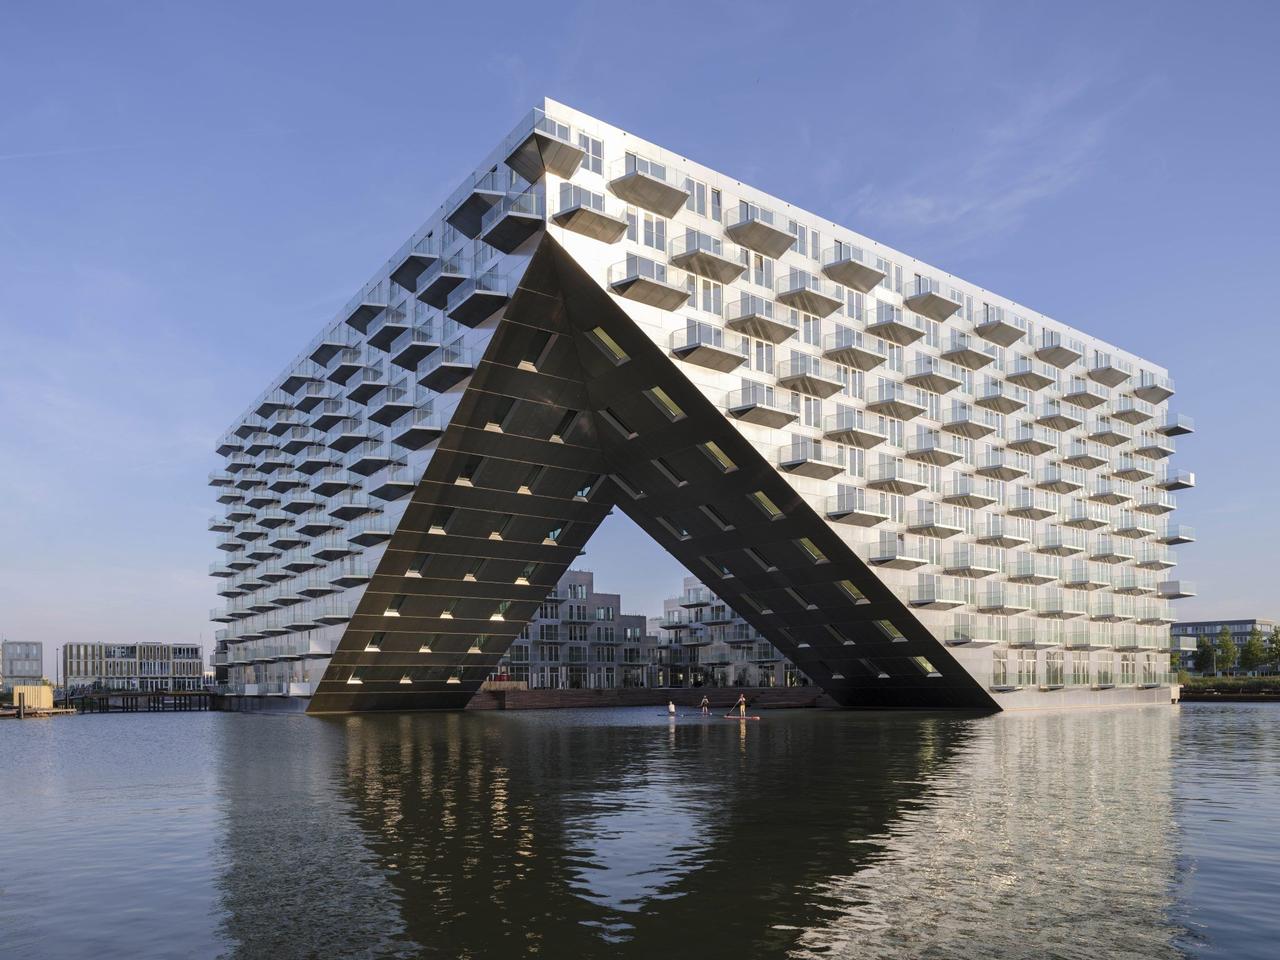 В центре Амстердама построили жилой квартал, плавающий в озере Эй Дже, с собственной гаванью внутри